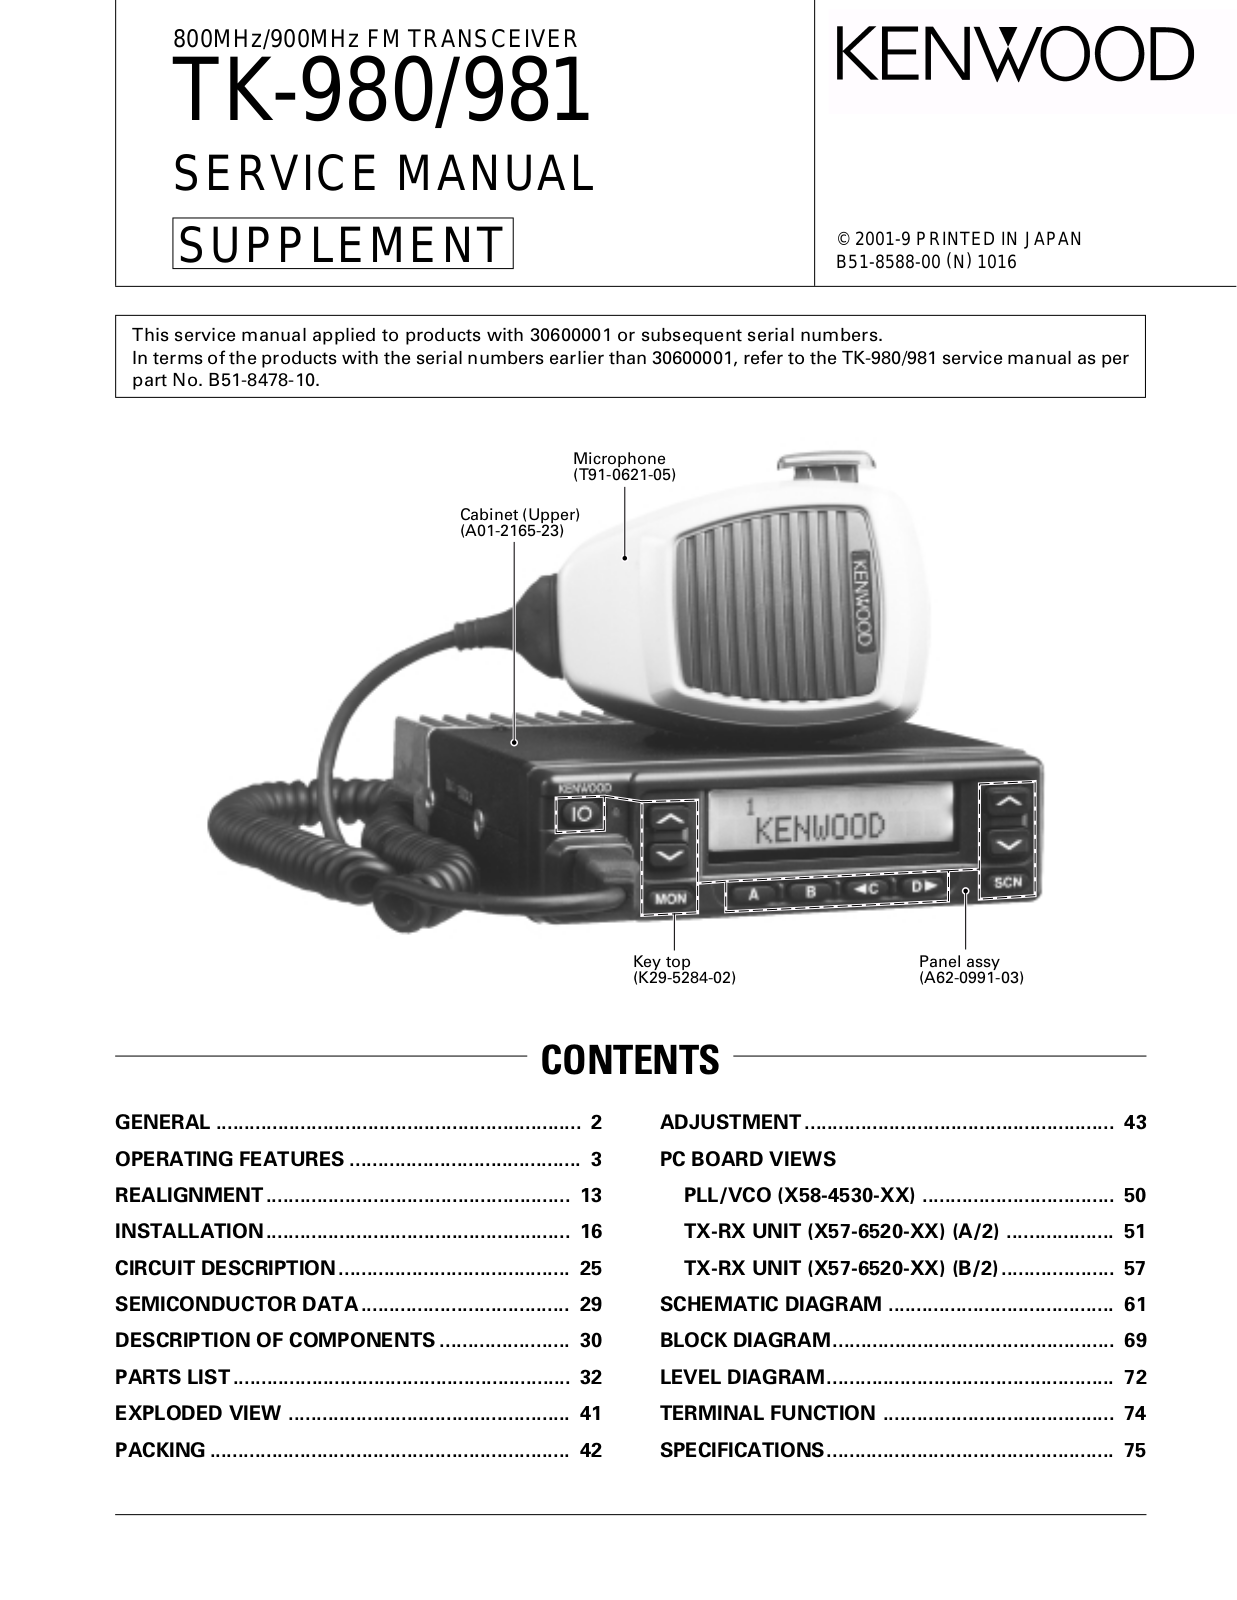 Kenwood TK-981, TK-980 Service Manual